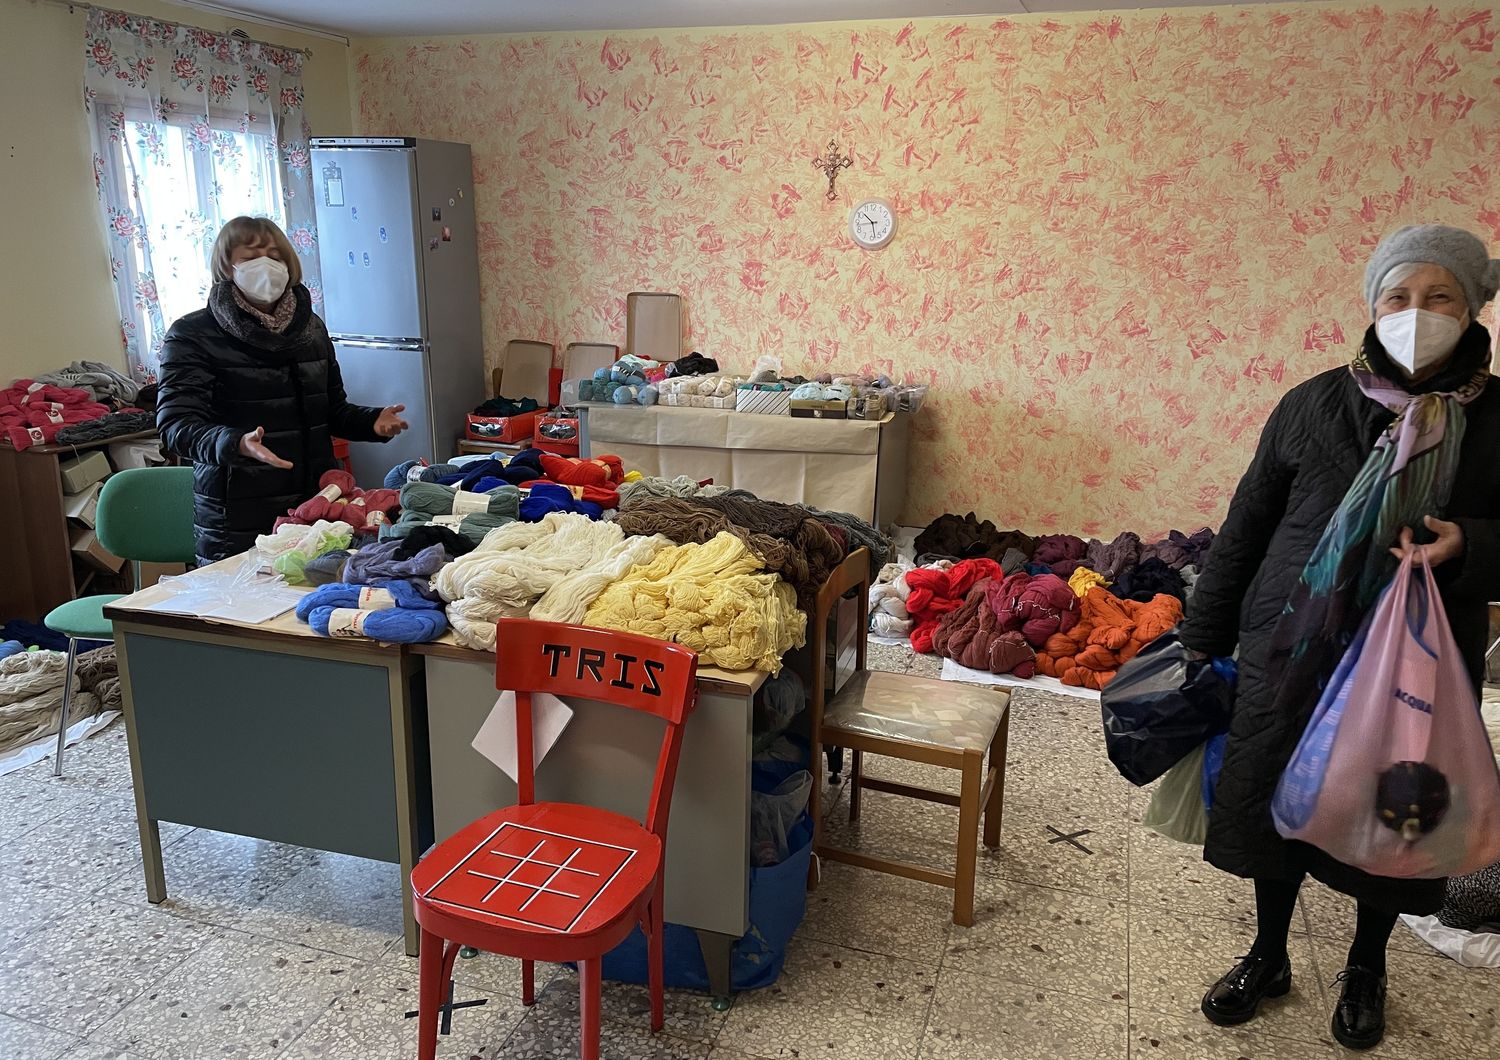 La distribuzione della lana per confezionare sciarpe e coperte per i profughi ucraini